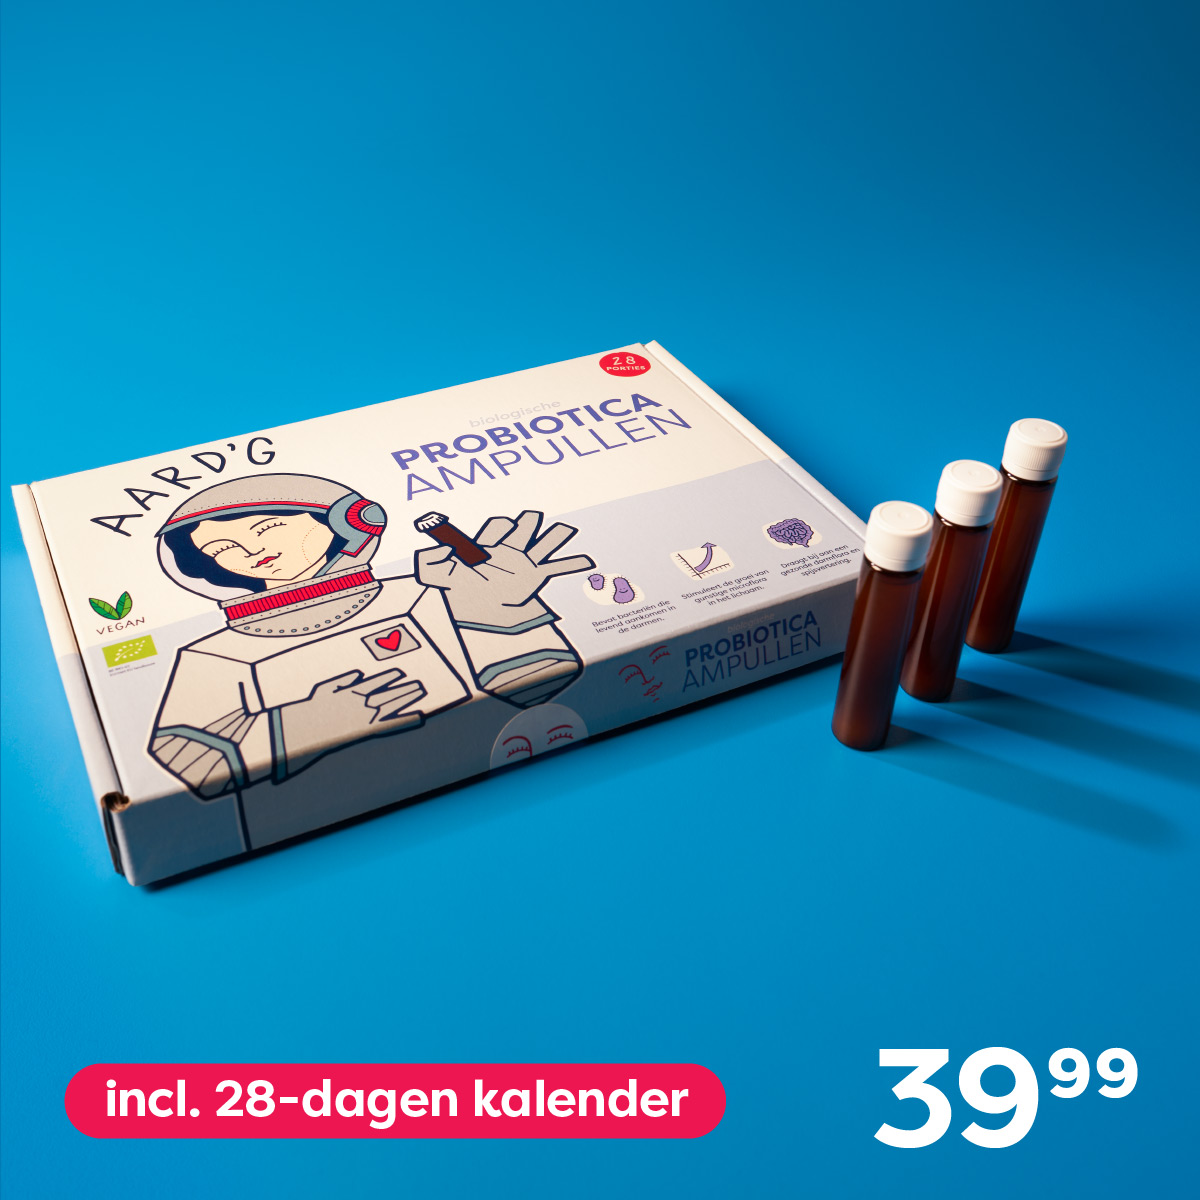 Probiotica Ampullen Challenge (28x9ml) + gratis 28-dagen kalender, prijs: 39,99 euro